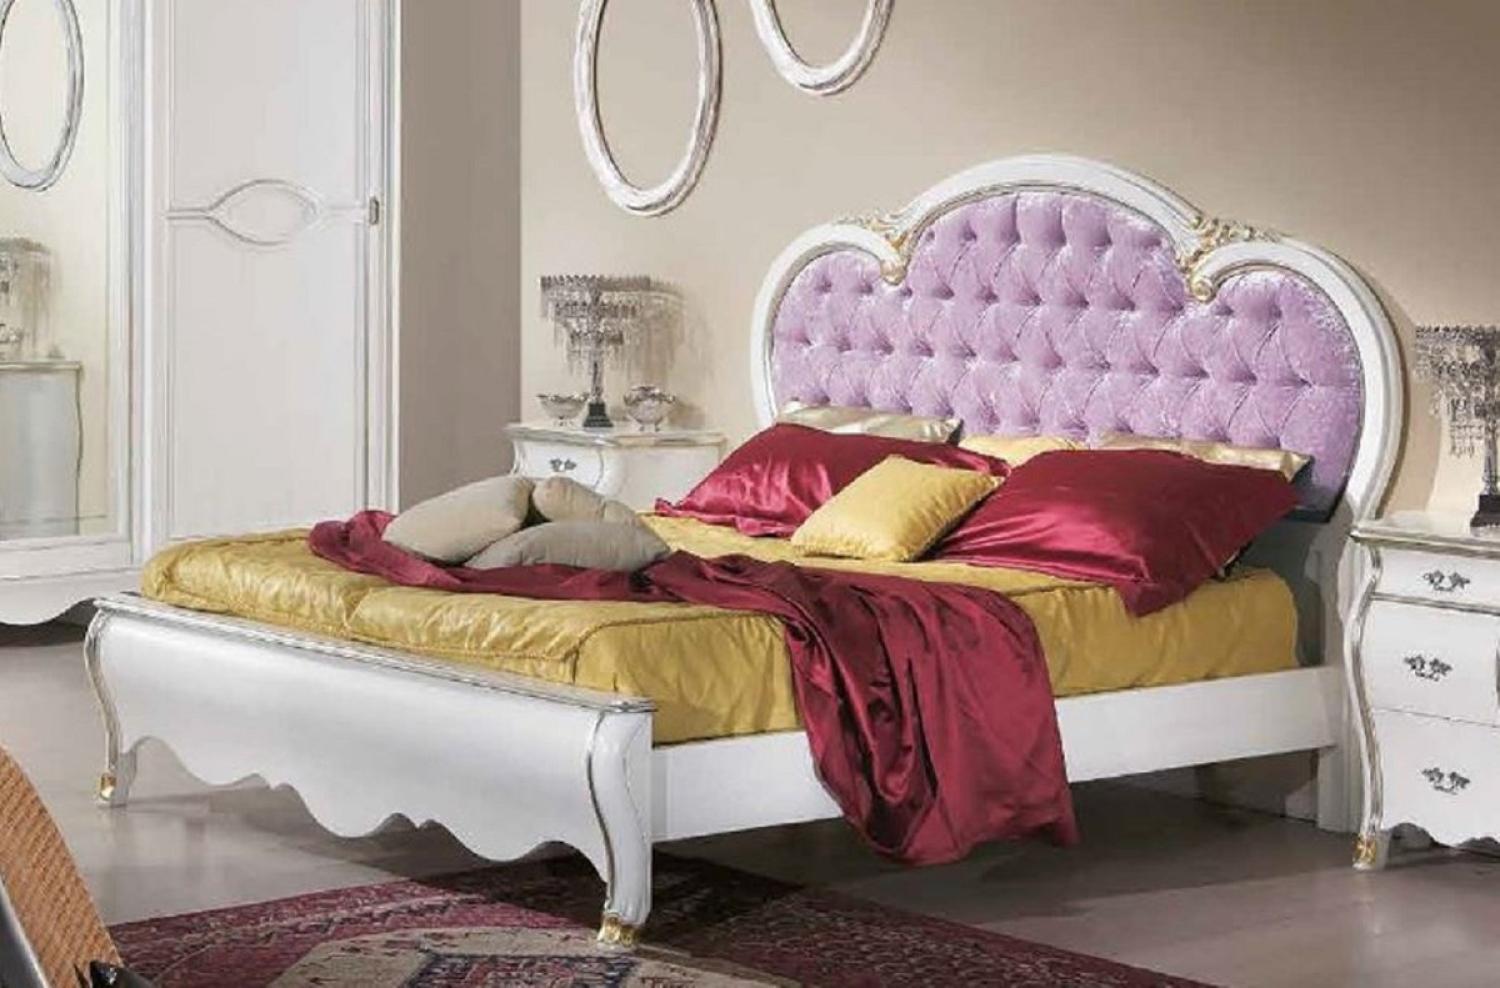 Casa Padrino Luxus Barock Doppelbett Lila / Weiß / Gold - Prunkvolles Massivholz Bett im Barockstil - Barock Schlafzimmer & Hotel Möbel - Luxus Qualität - Made in Italy Bild 1